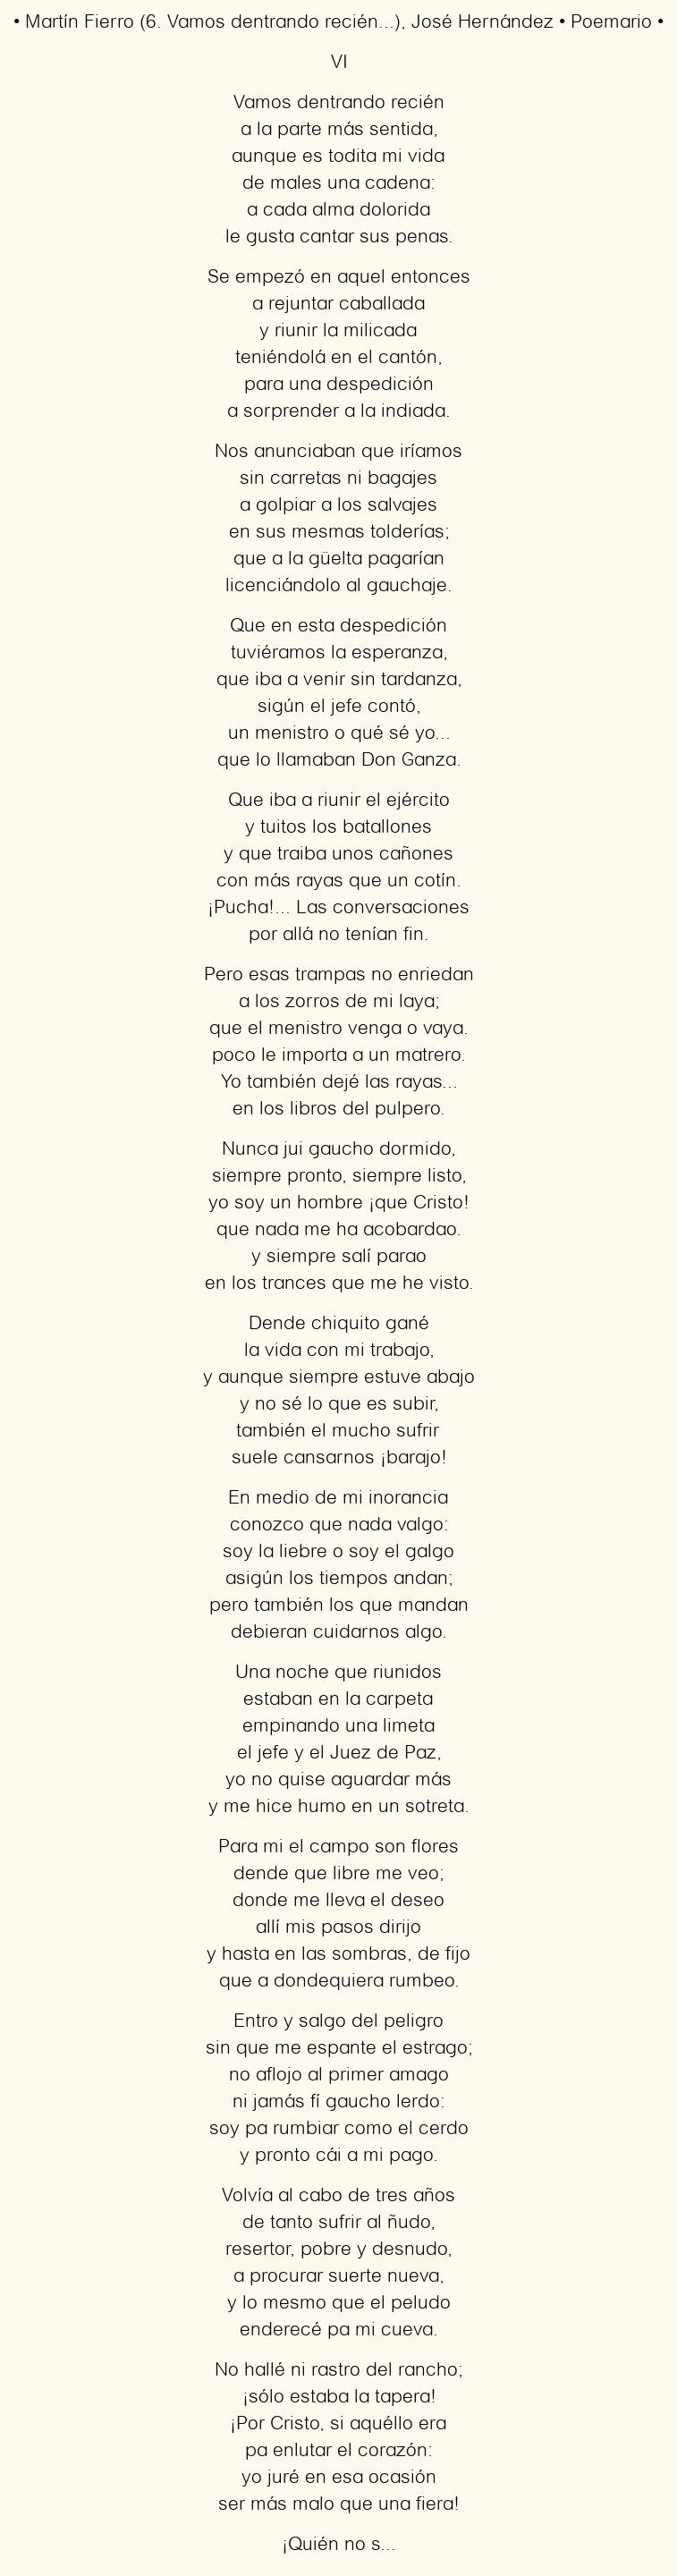 Imagen con el poema Martín Fierro (6. Vamos dentrando recién…), por José Hernández